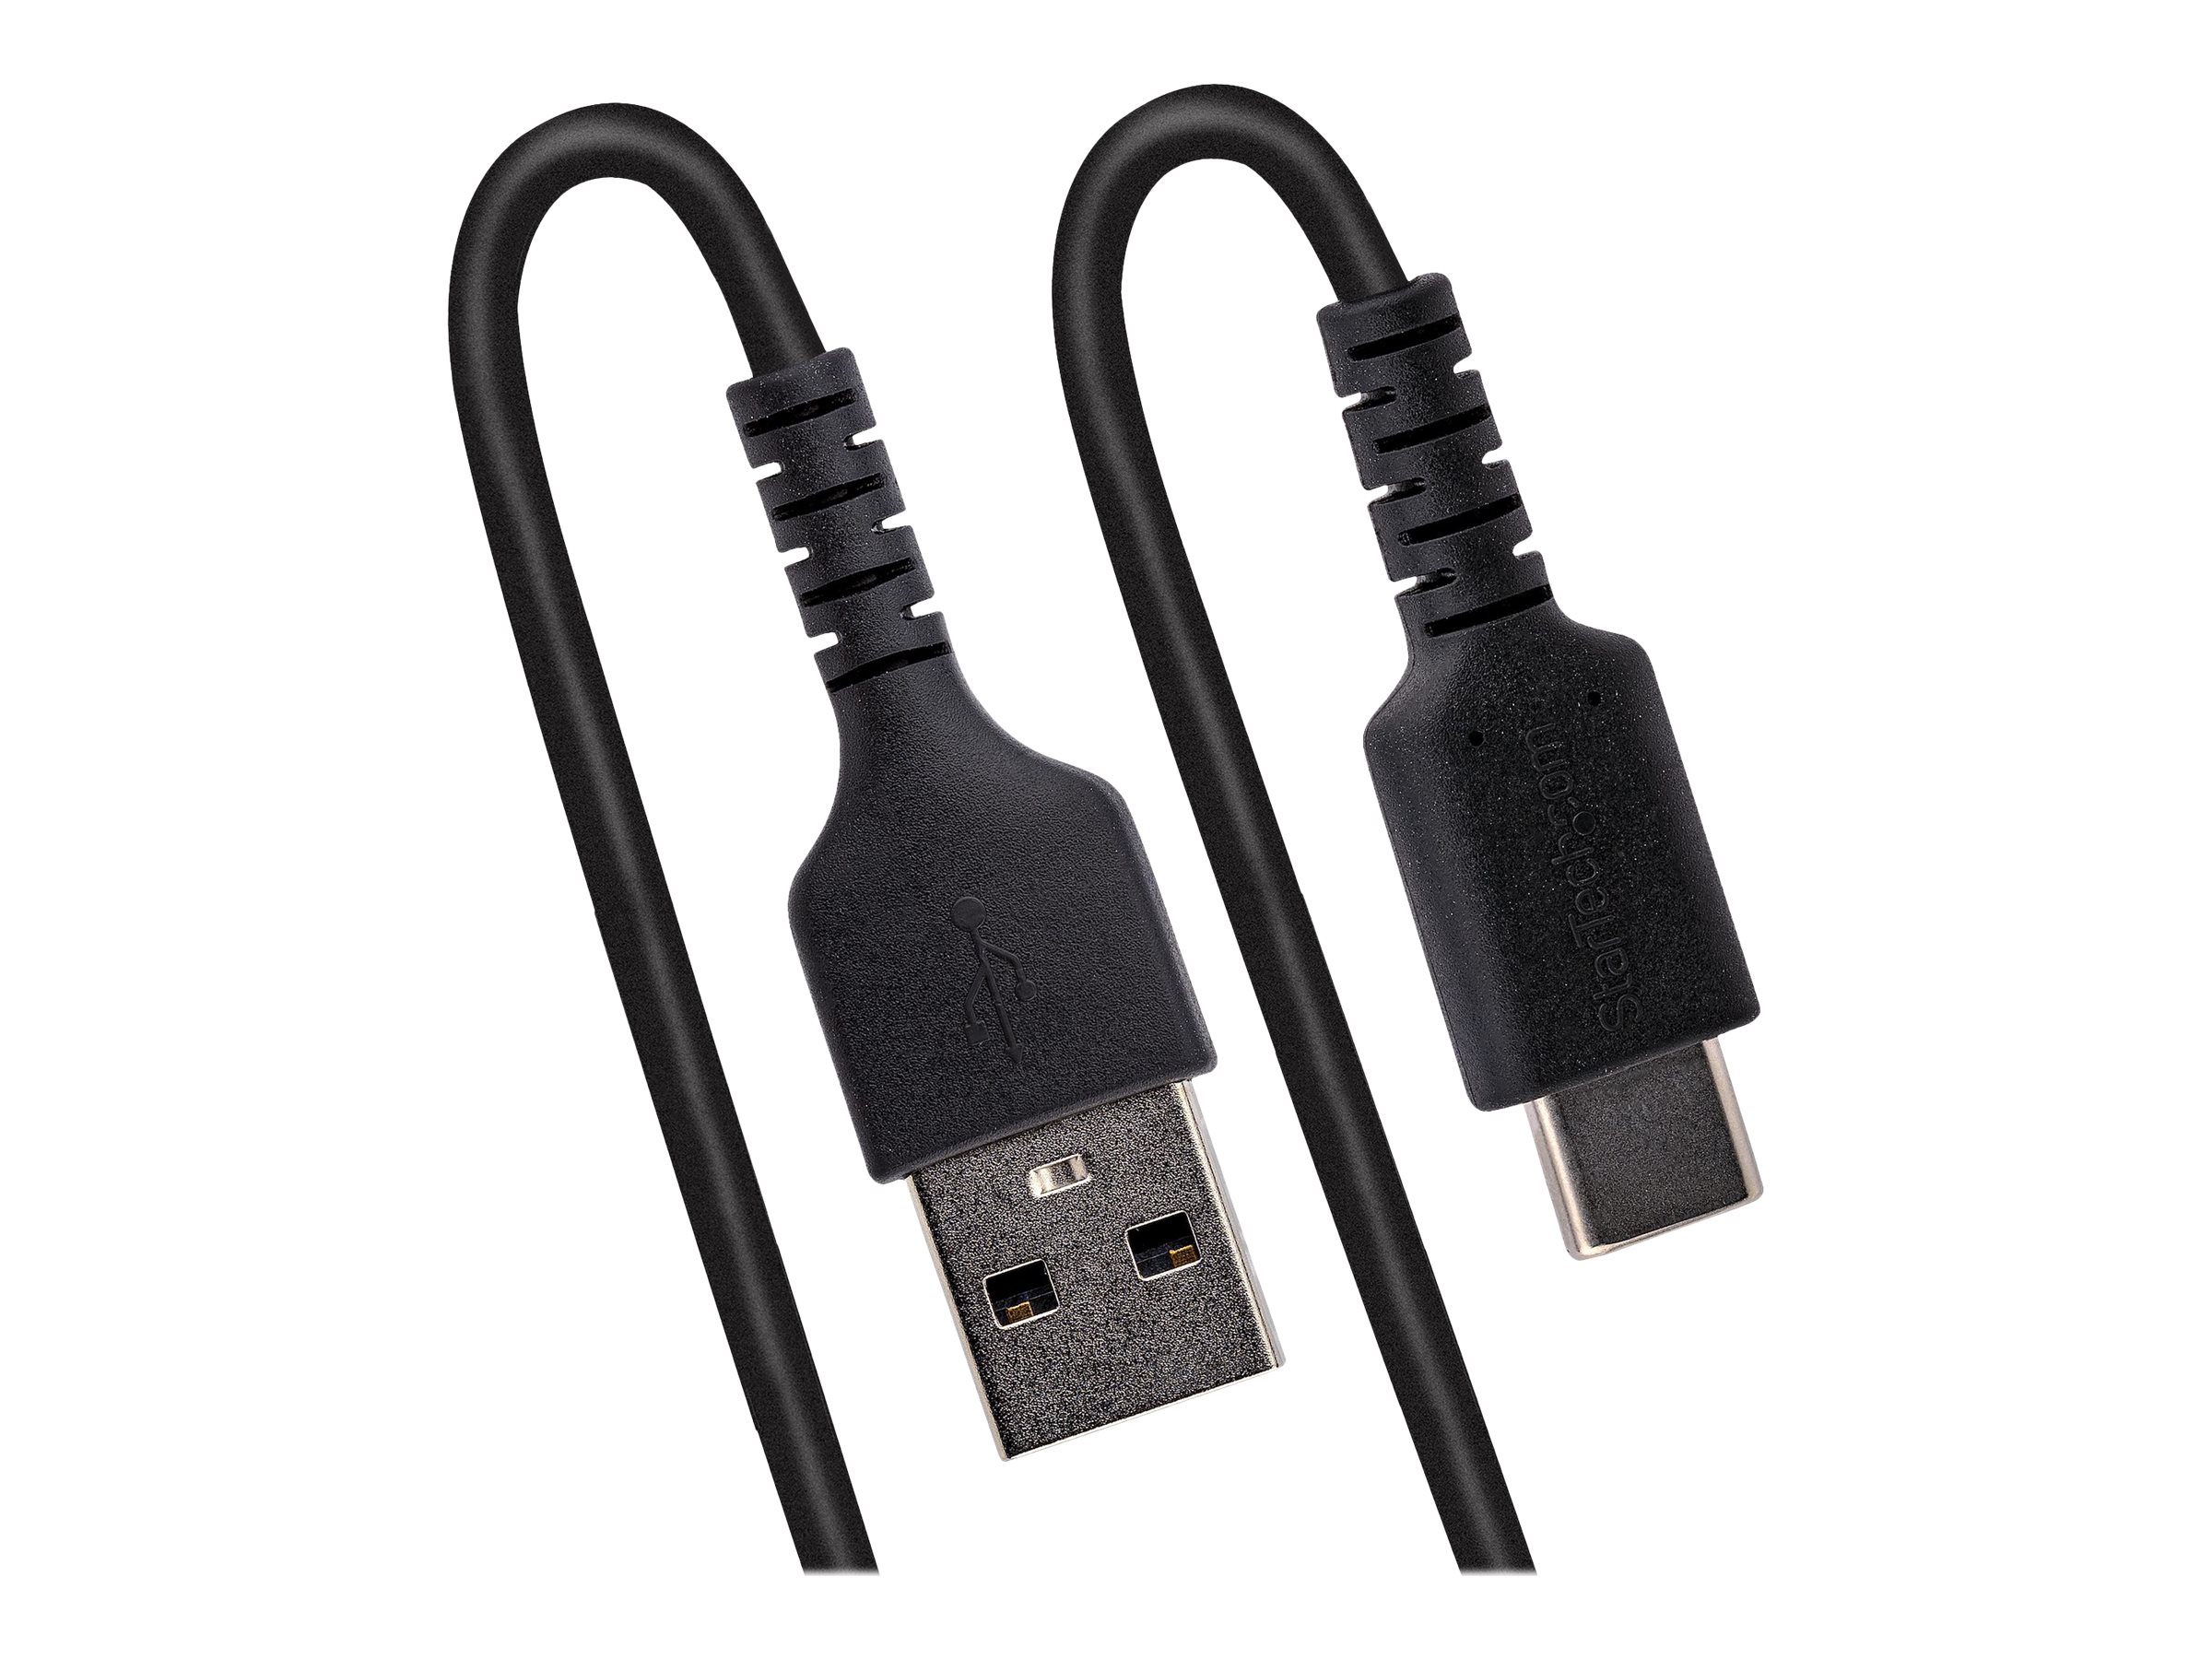 StarTech.com Câble USB vers USB-C de 1m - Cordon USB USB-C Enroulé à Usage Intensif - Câble USB-A vers USB-C en Fibre Aramide Robuste - Chargeur USB-C M/M - Adaptateur TB3 Noir (R2ACC-1M-USB-CABLE) - Câble USB - USB (M) pour 24 pin USB-C (M) - USB 2.0 - 3 A - 1 m - bobiné - noir - R2ACC-1M-USB-CABLE - Câbles USB